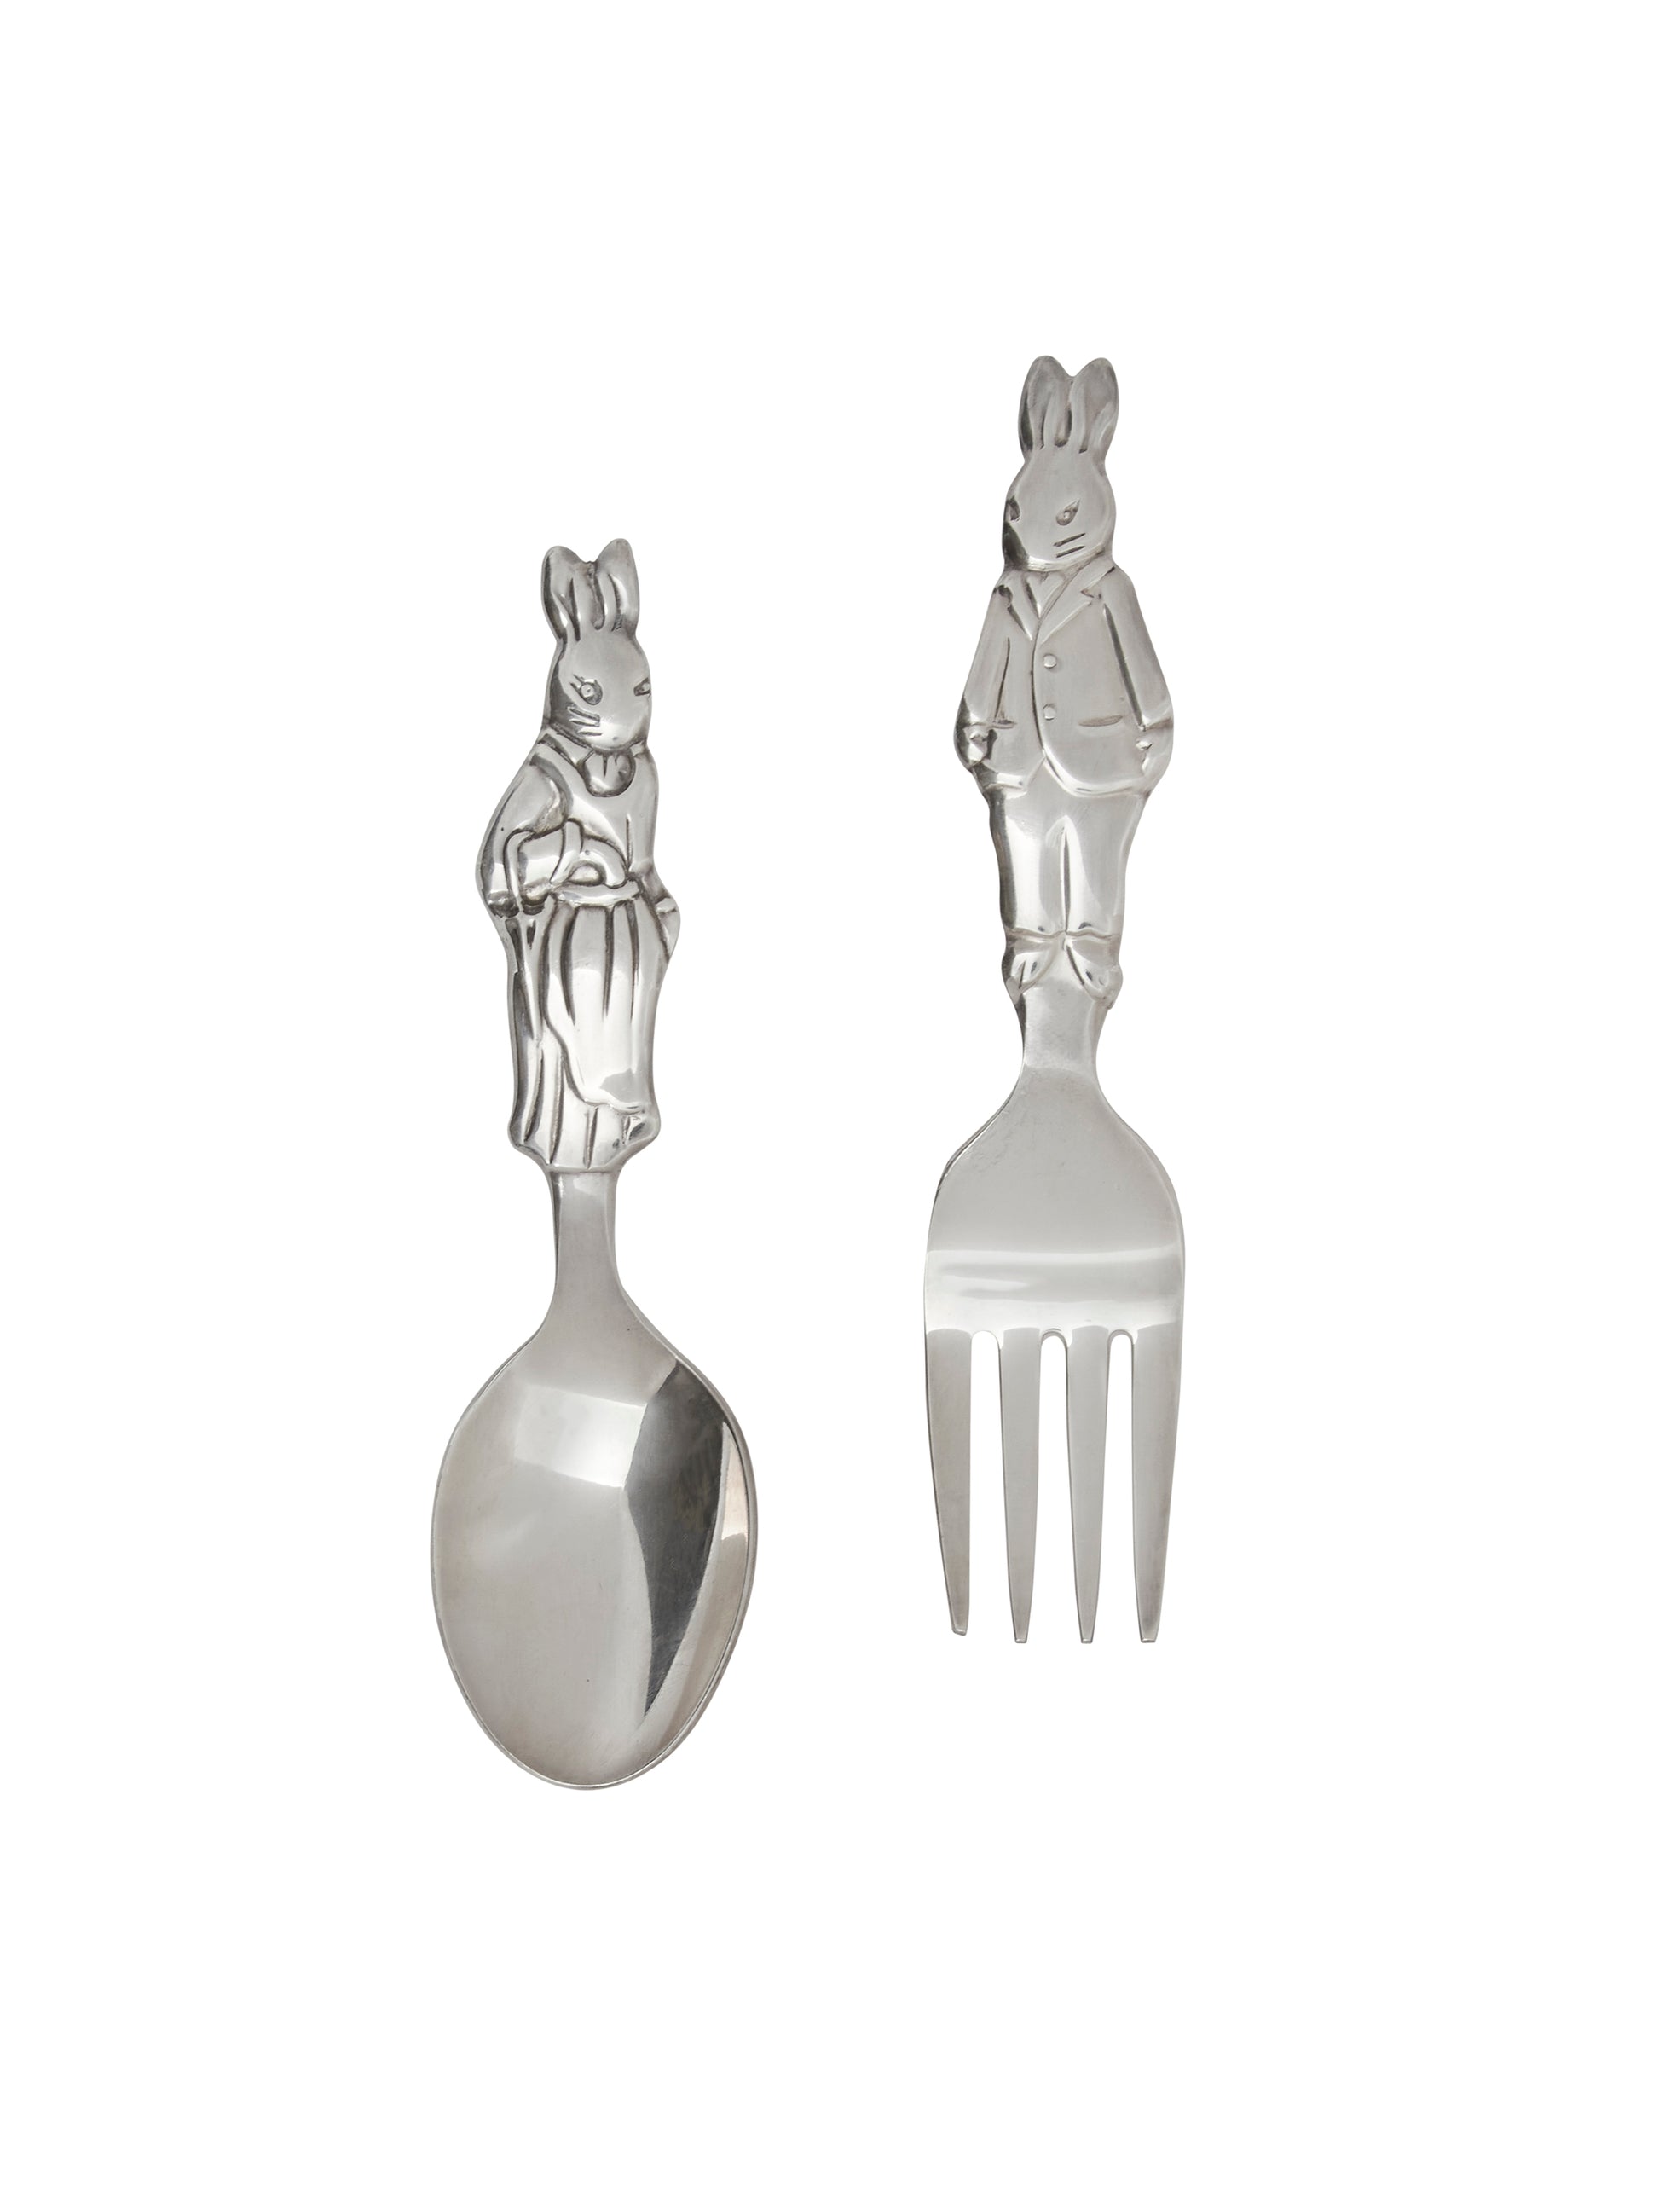 Vintage Pair of Baby Spoons -   Baby spoon, Vintage, Serving utensils